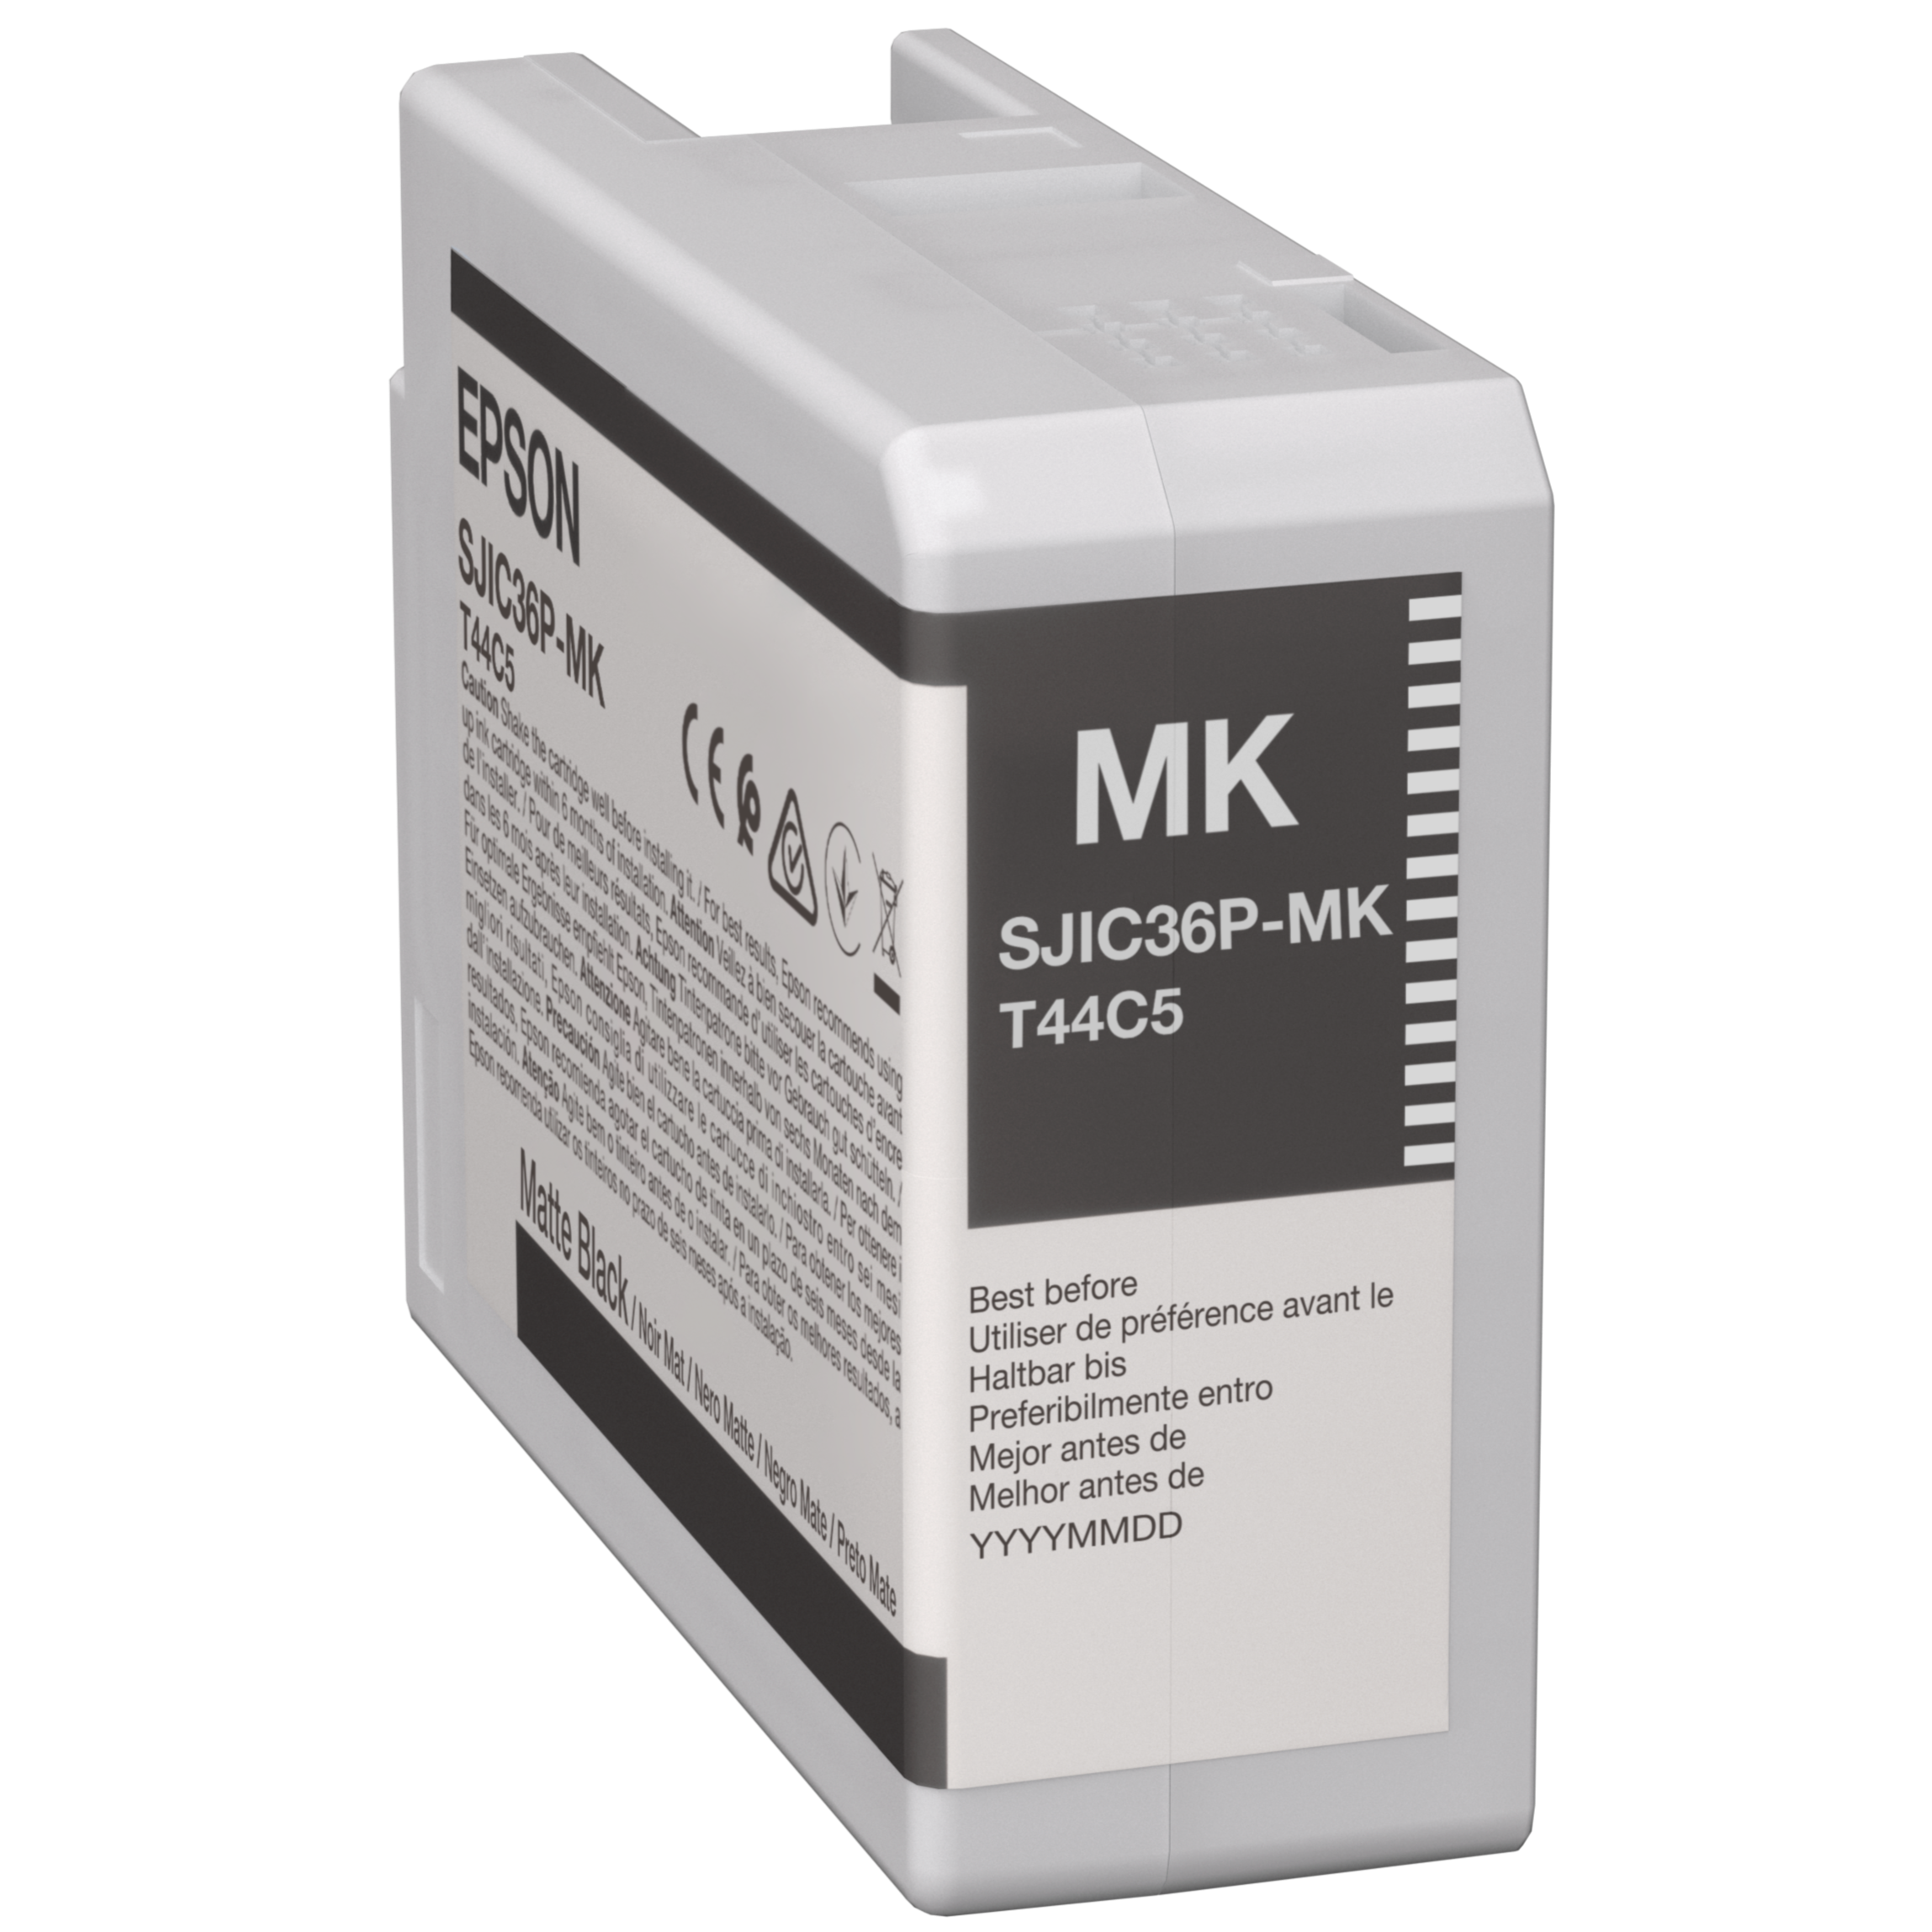 SJIC36P(MK): Ink cartridge for ColorWorks C6500/C6000 (Black)